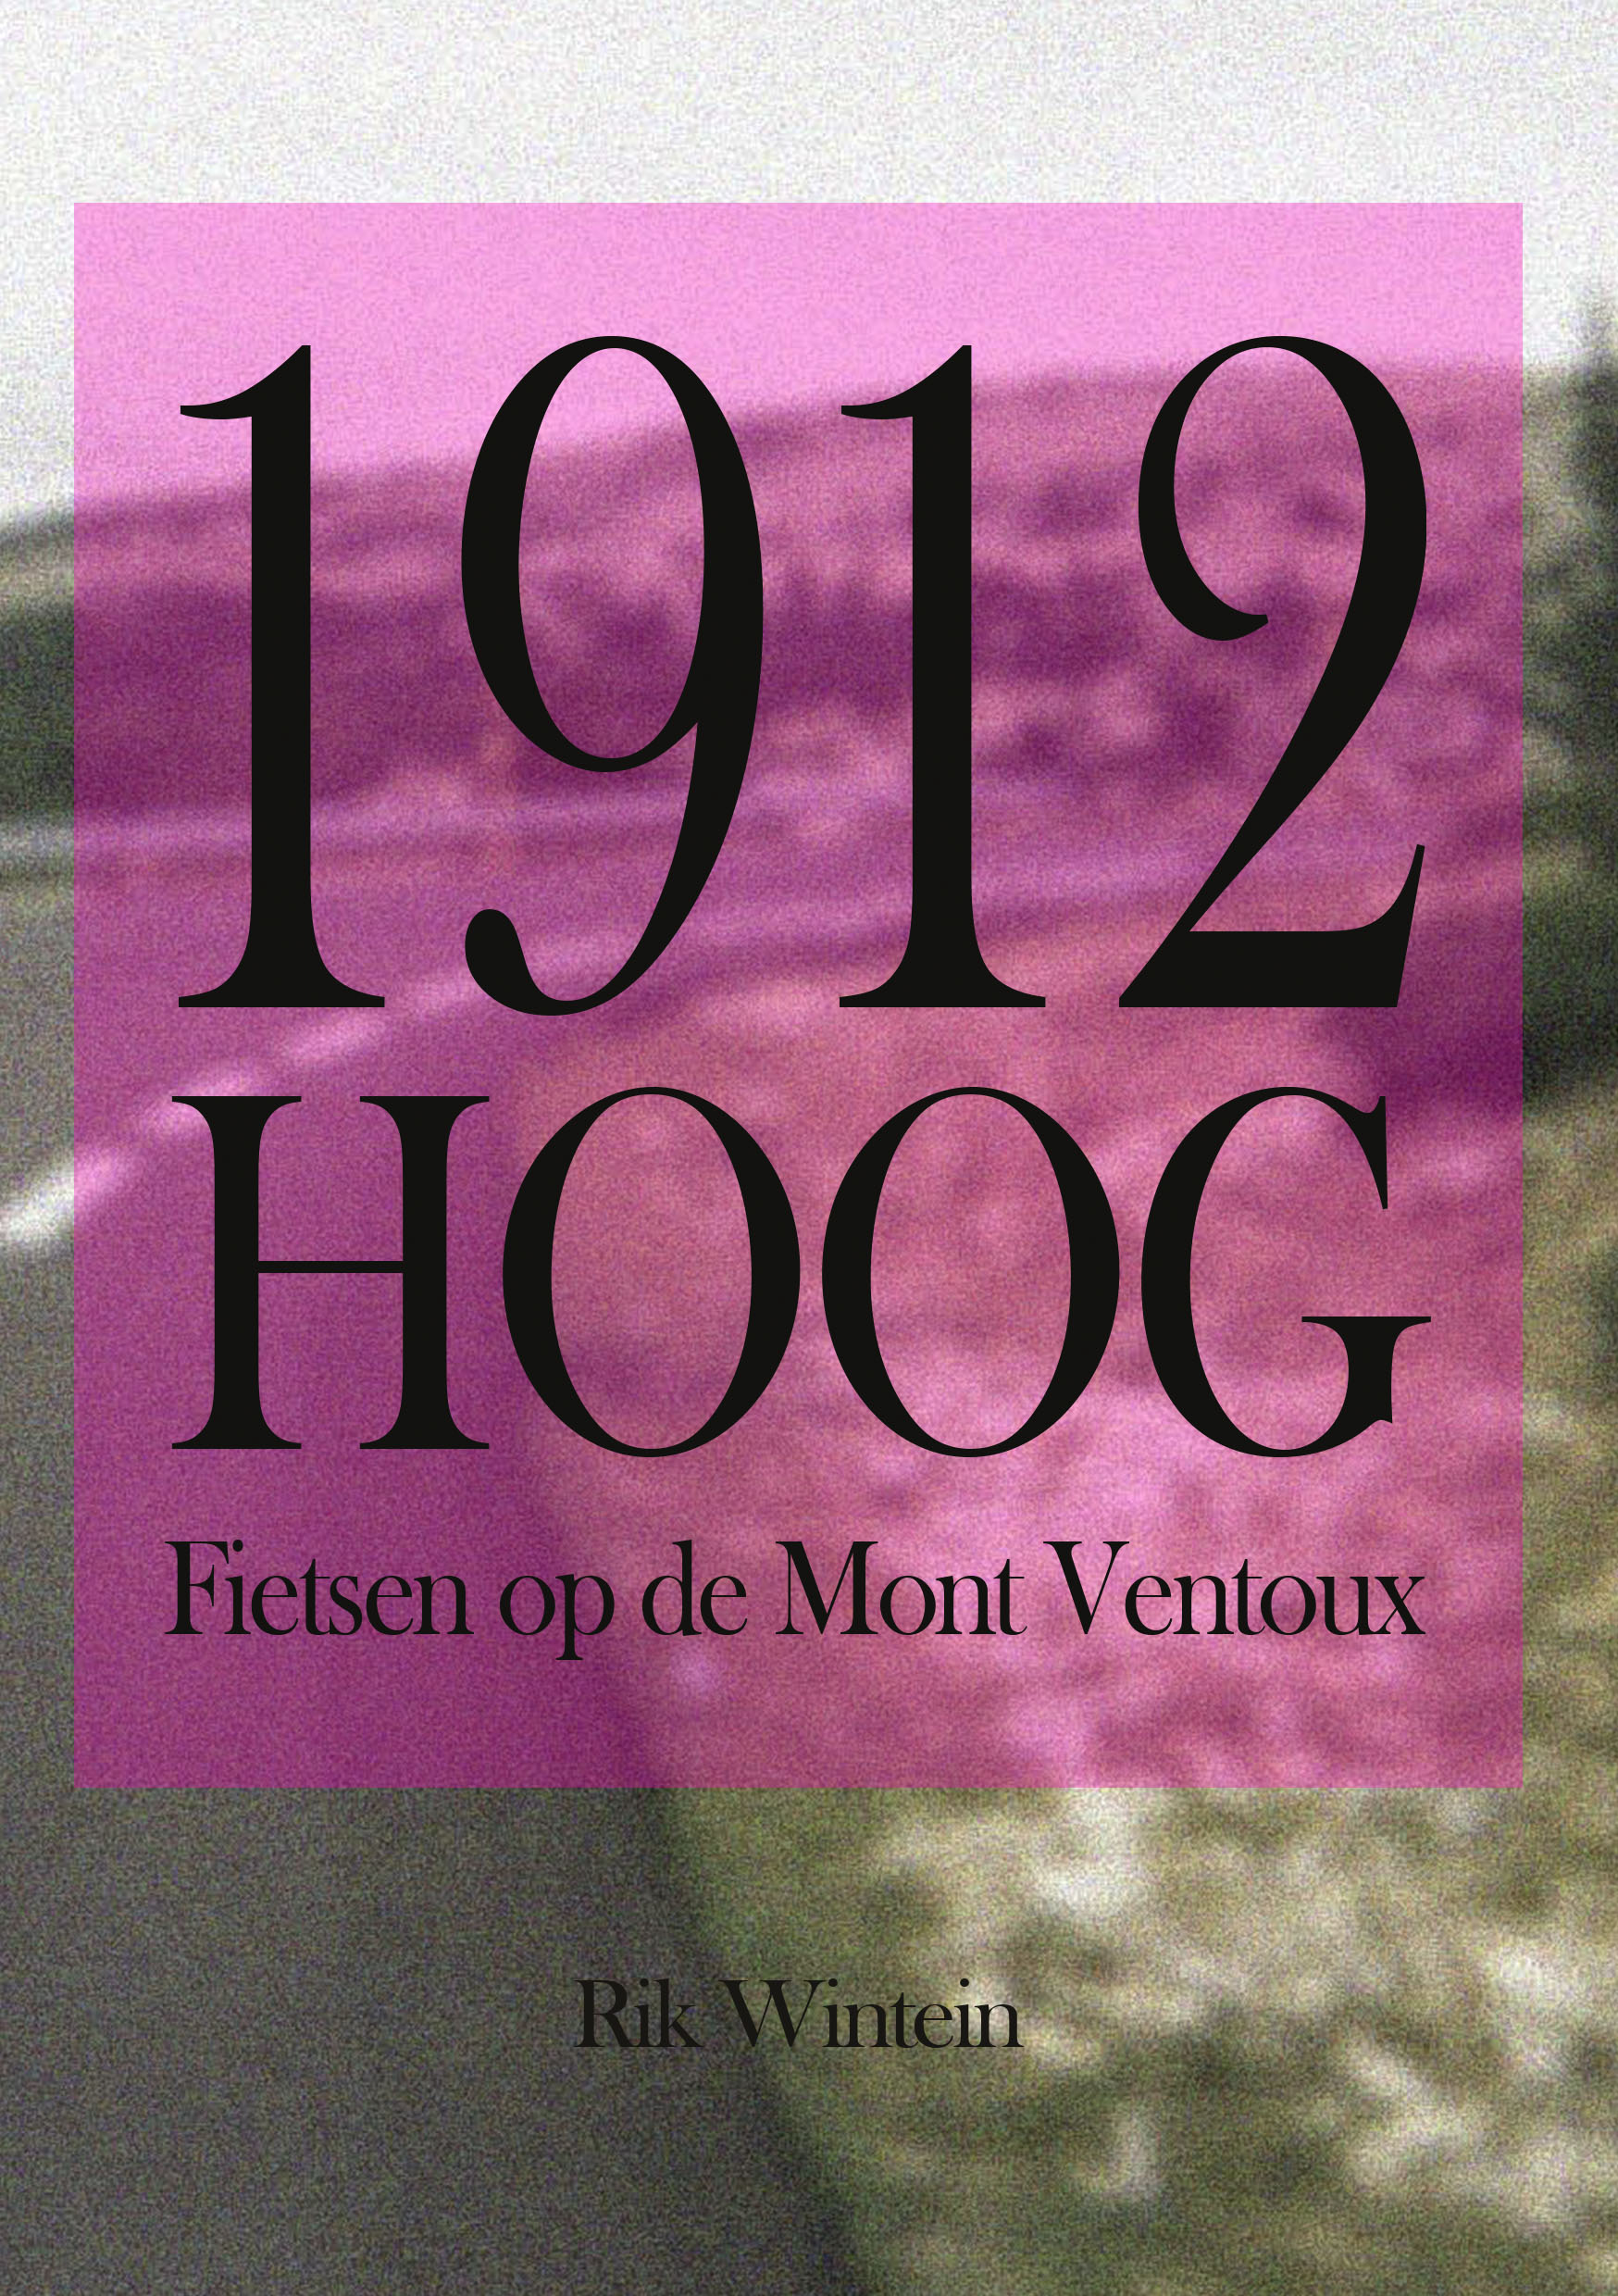 1912 Hoog